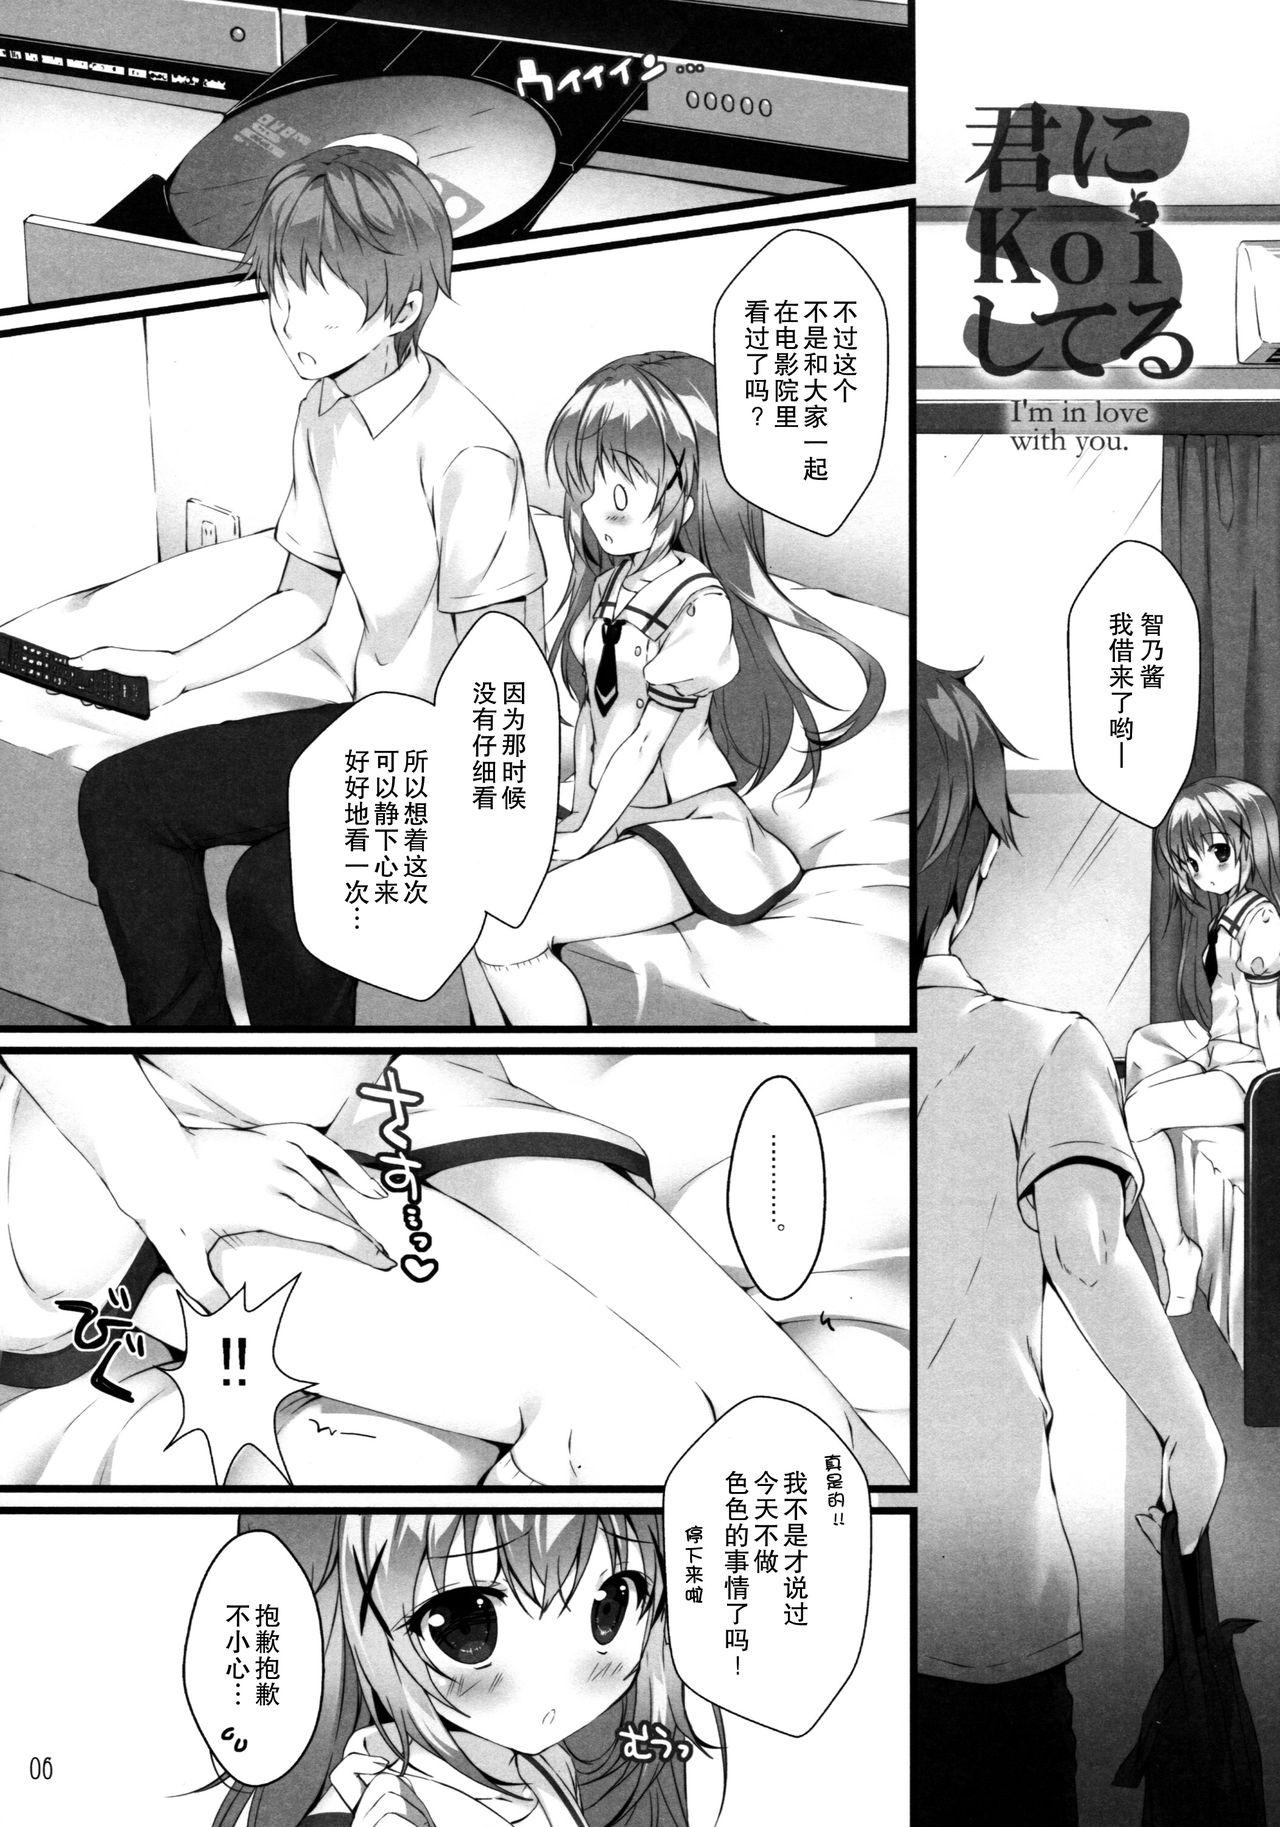 Vagina Kimi ni koi Shiteru 5 - Gochuumon wa usagi desu ka Oriental - Page 6